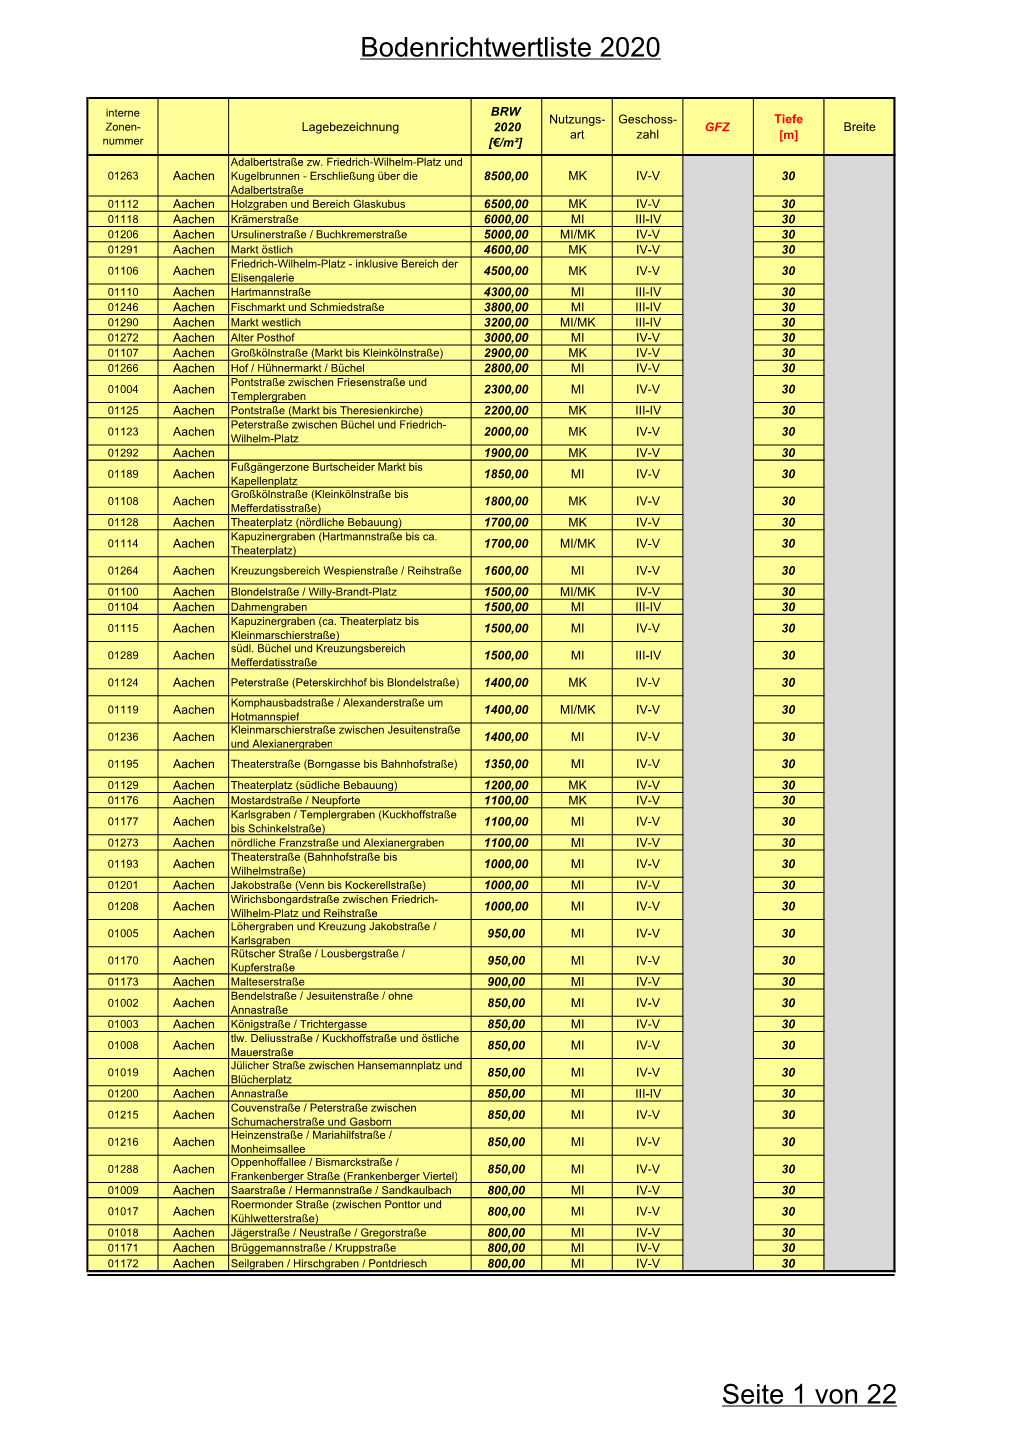 Bodenrichtwertliste 2020 Seite 1 Von 22